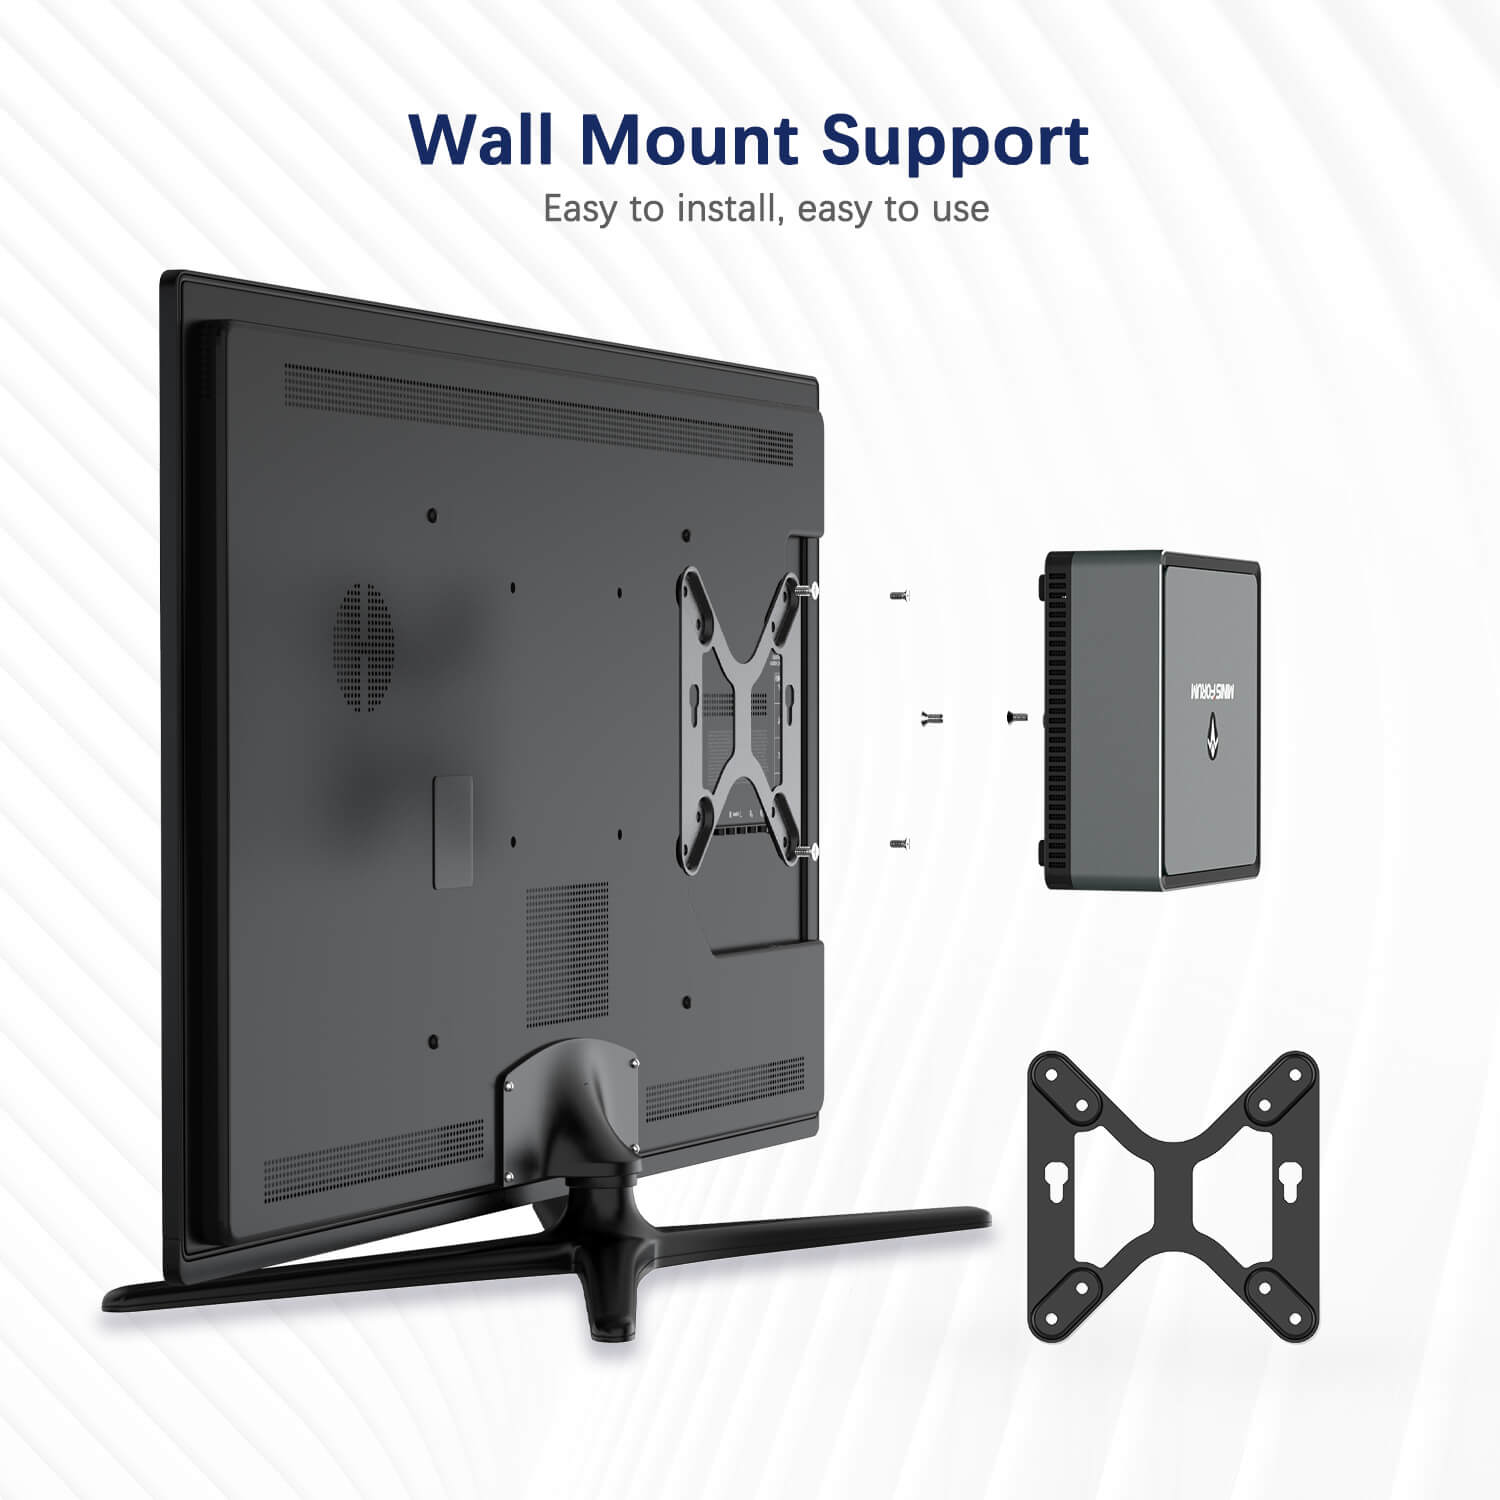 MinisForum EliteMini UM700 Showing Wall Mount Support